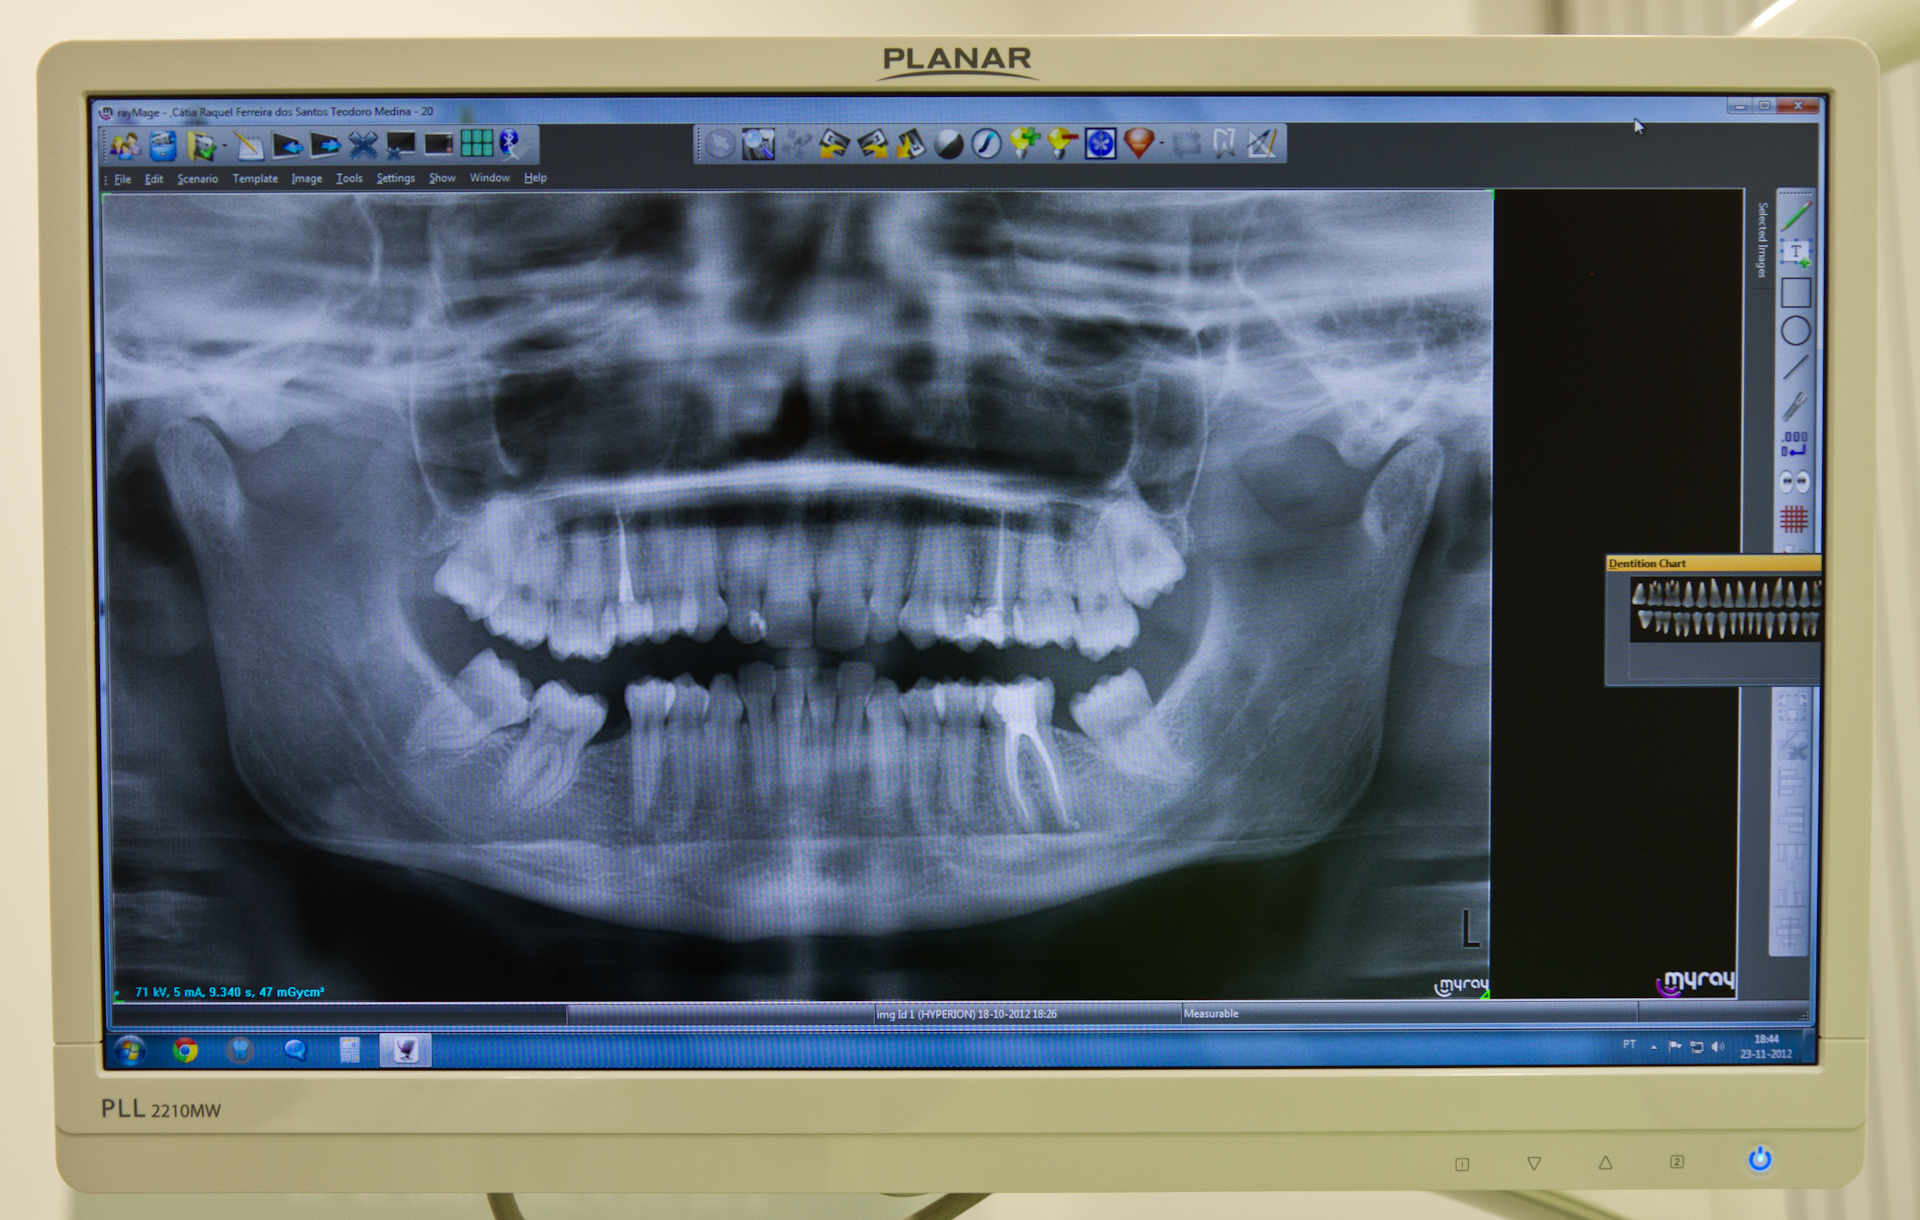 Implantes Dentários - XL Smile